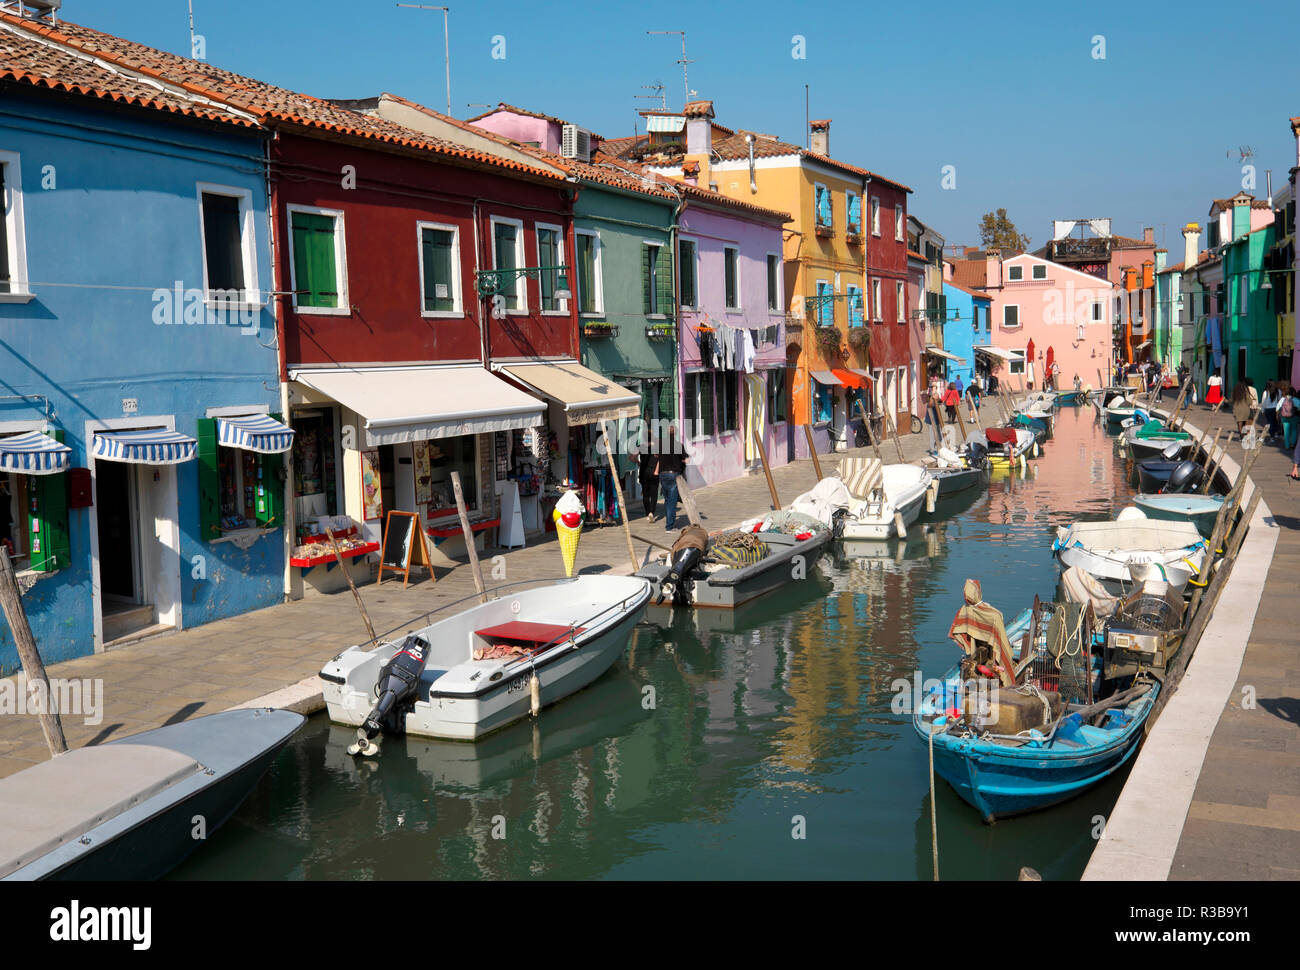 Typische bunte Häuser auf dem Kanal, Insel Burano, Venedig, Venetien, Italien Stockfoto